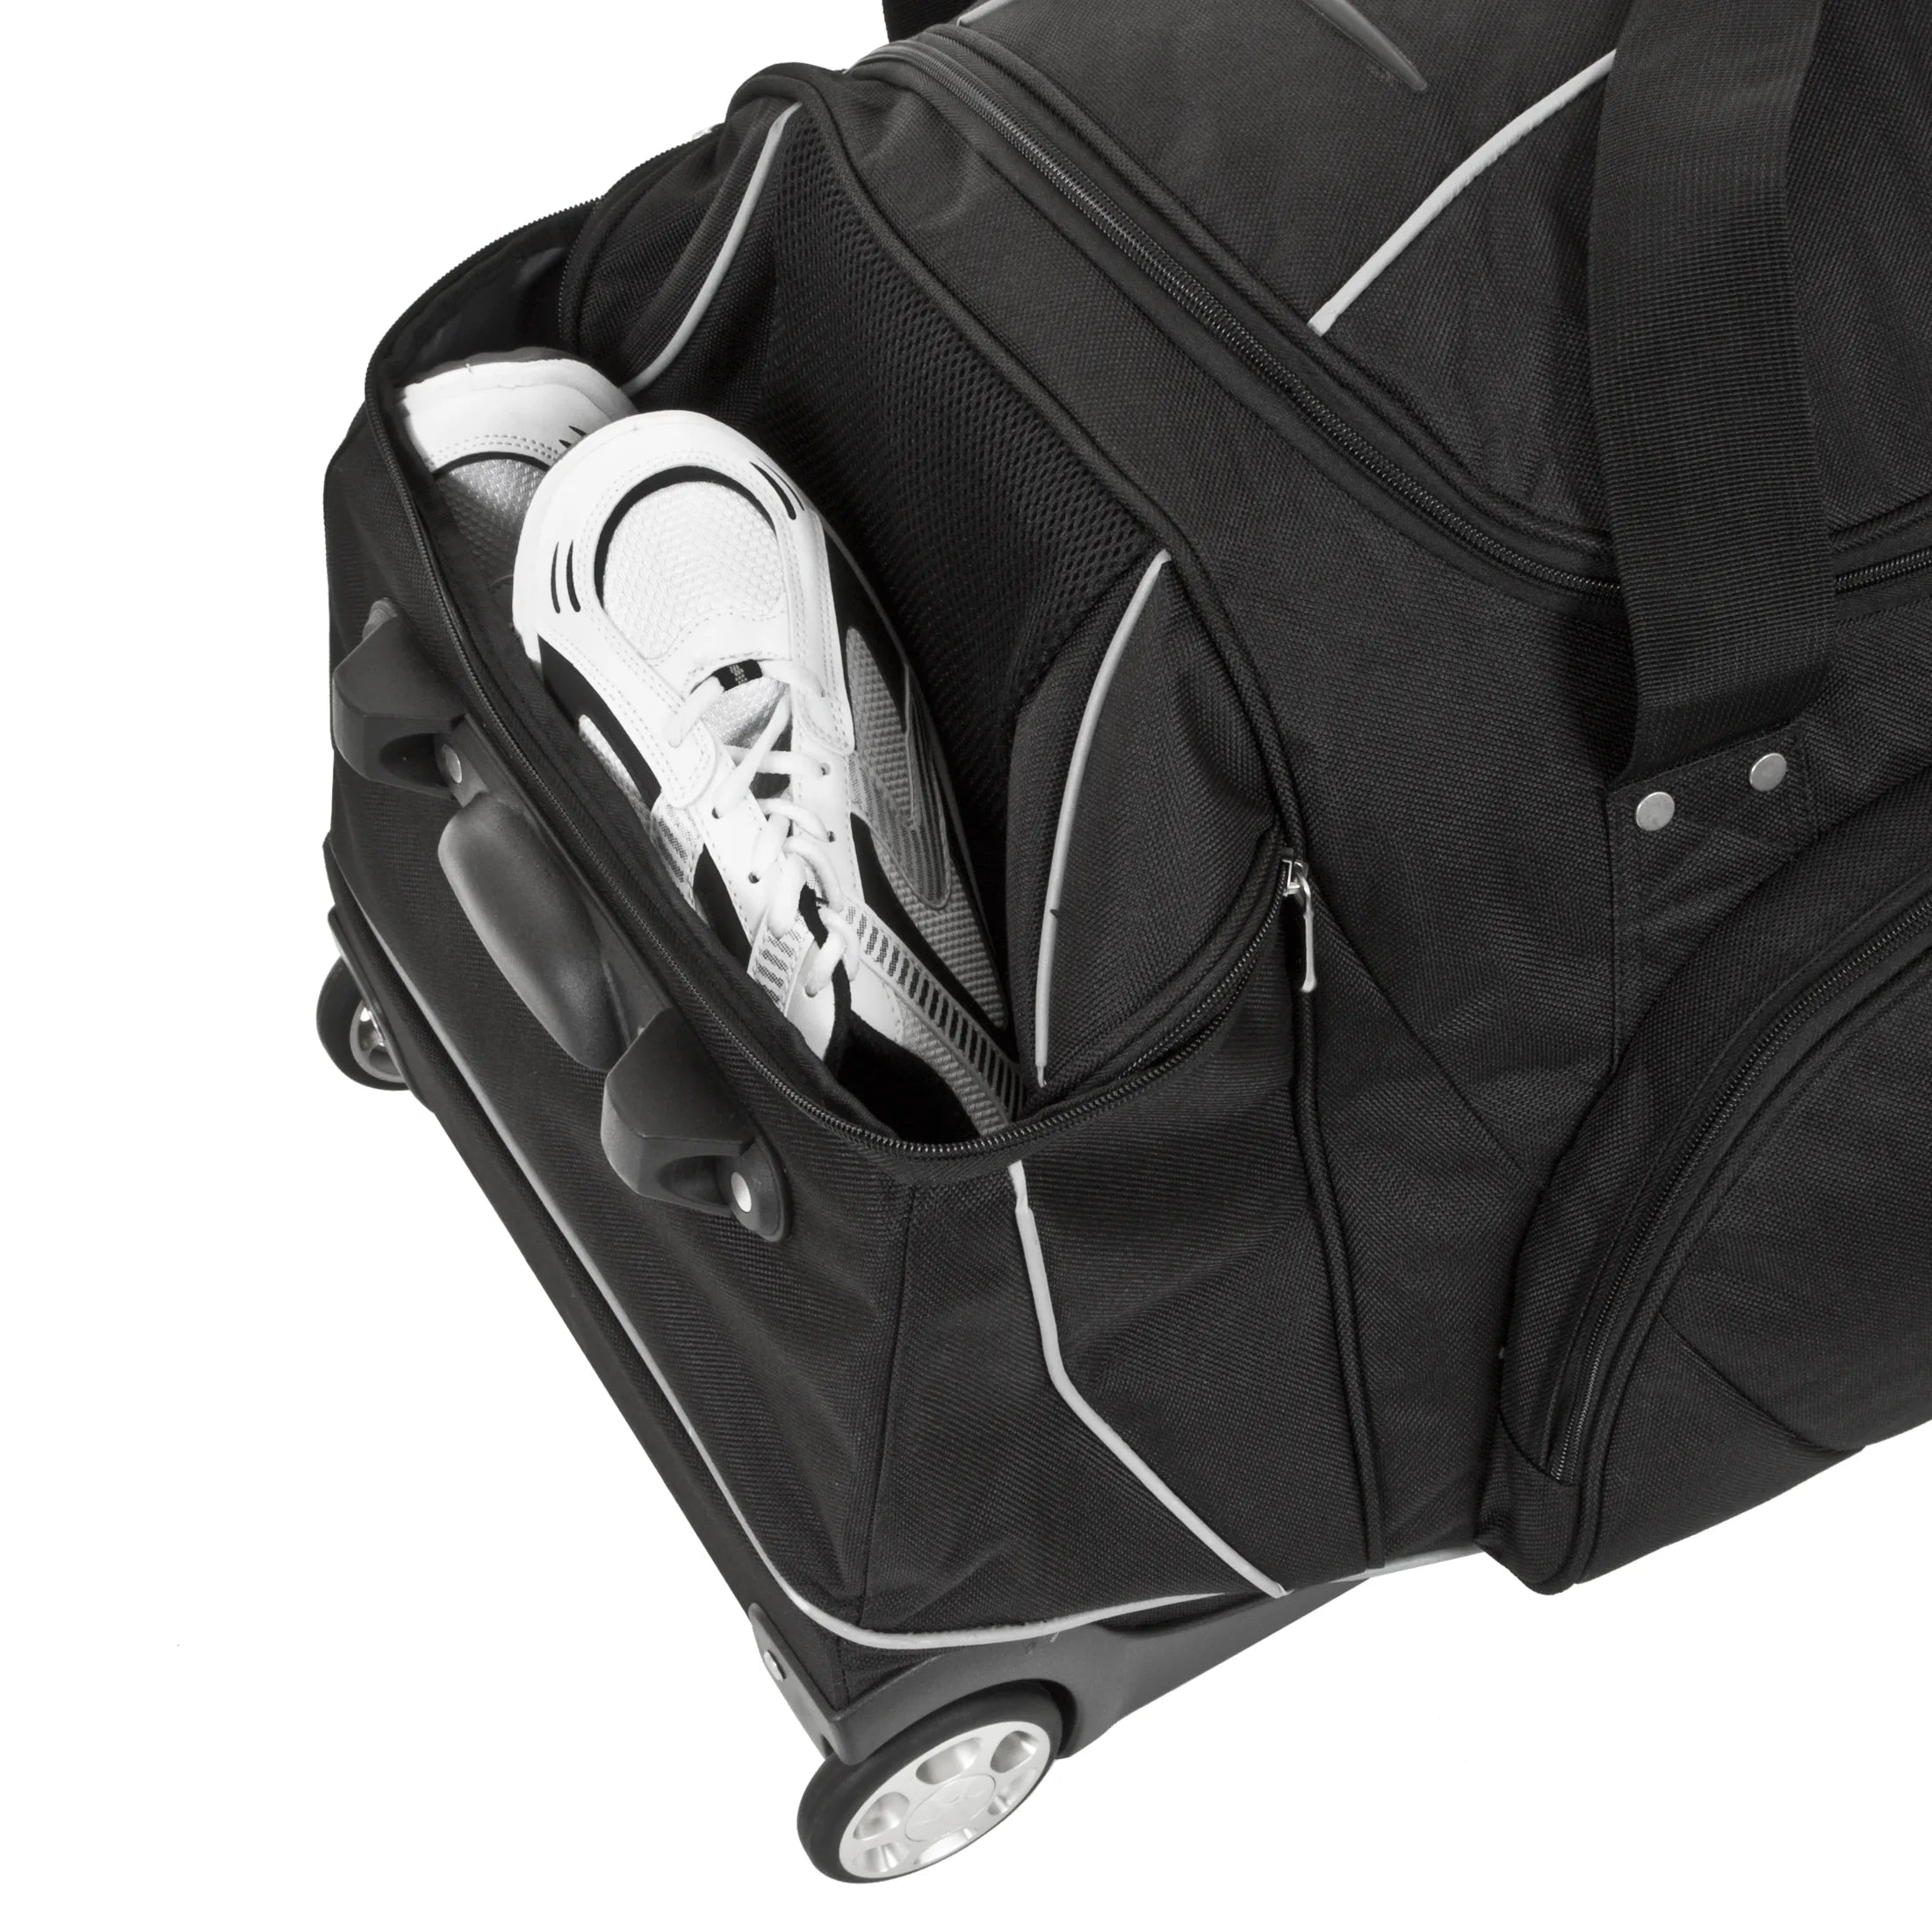 Dermata Reise Rollenreisetasche mit Rucksackfunktion 96 cm - grau